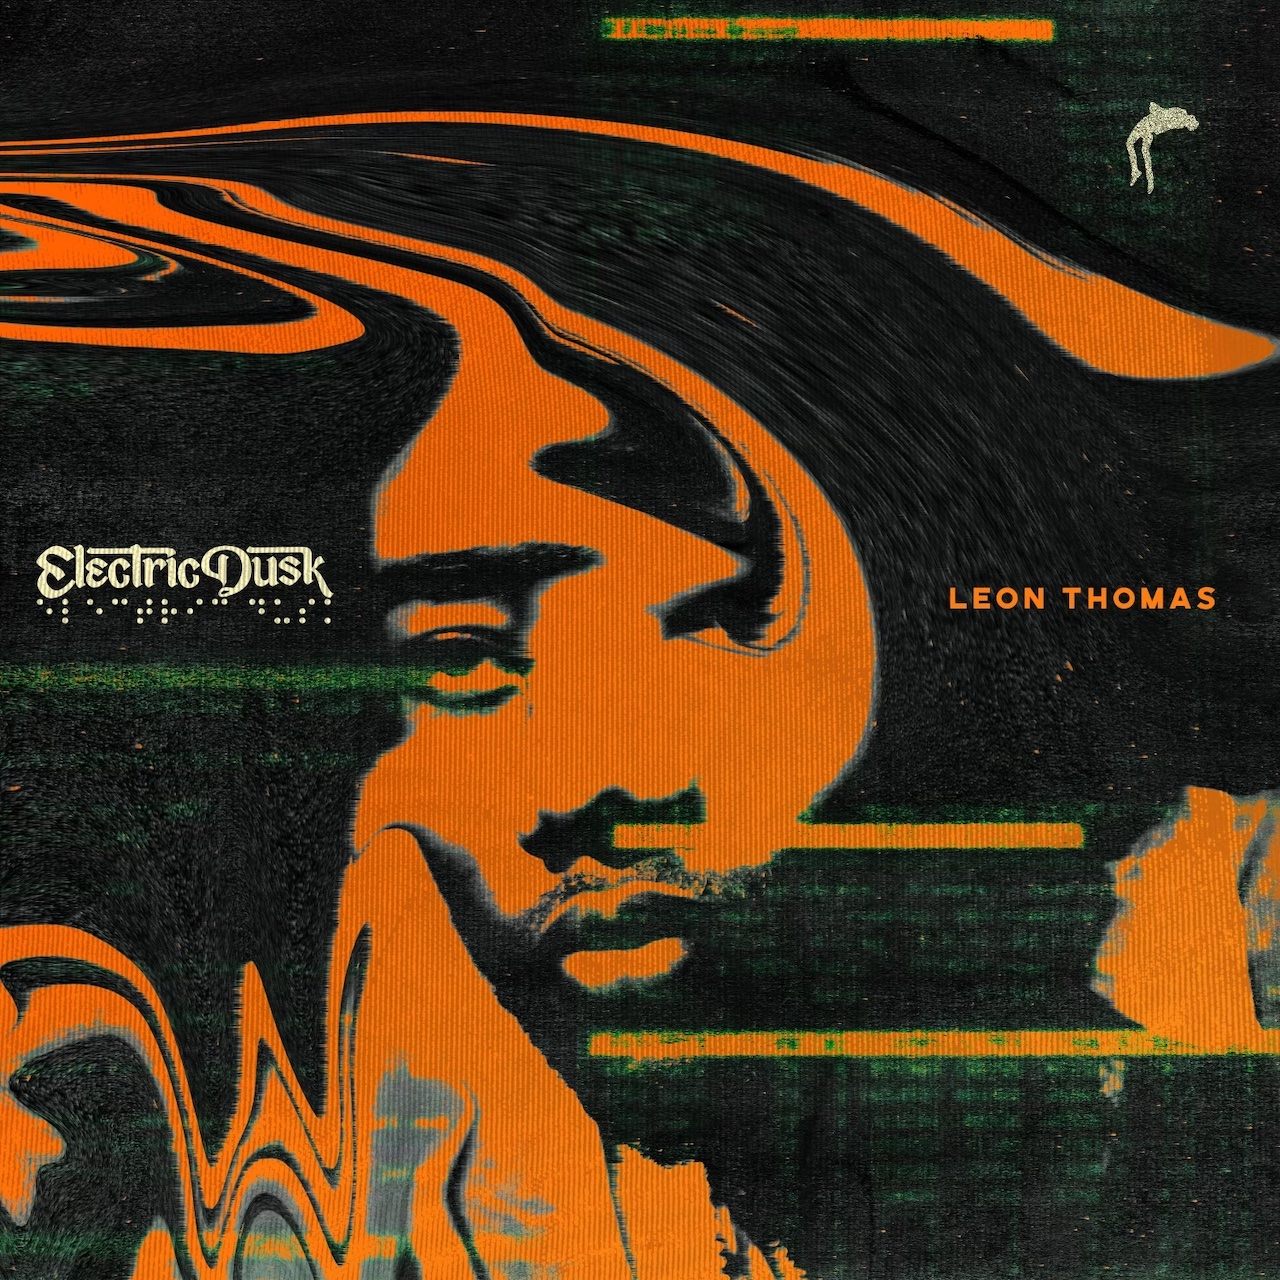 Leon Thomas III — Blue Hundreds cover artwork